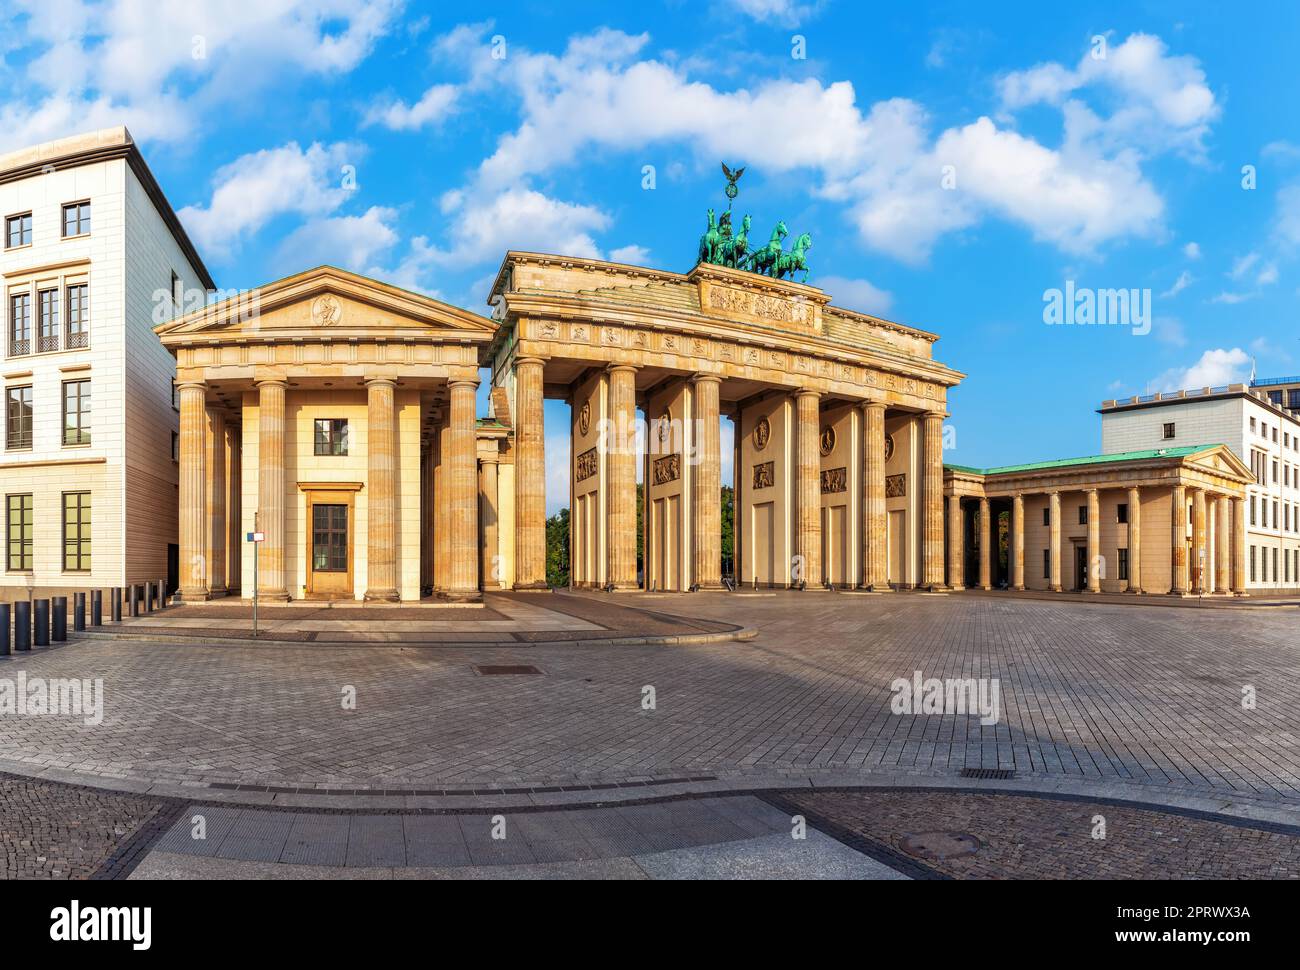 La famosa porta di Brandeburgo è il luogo di visita più popolare di Berlino, Germania Foto Stock